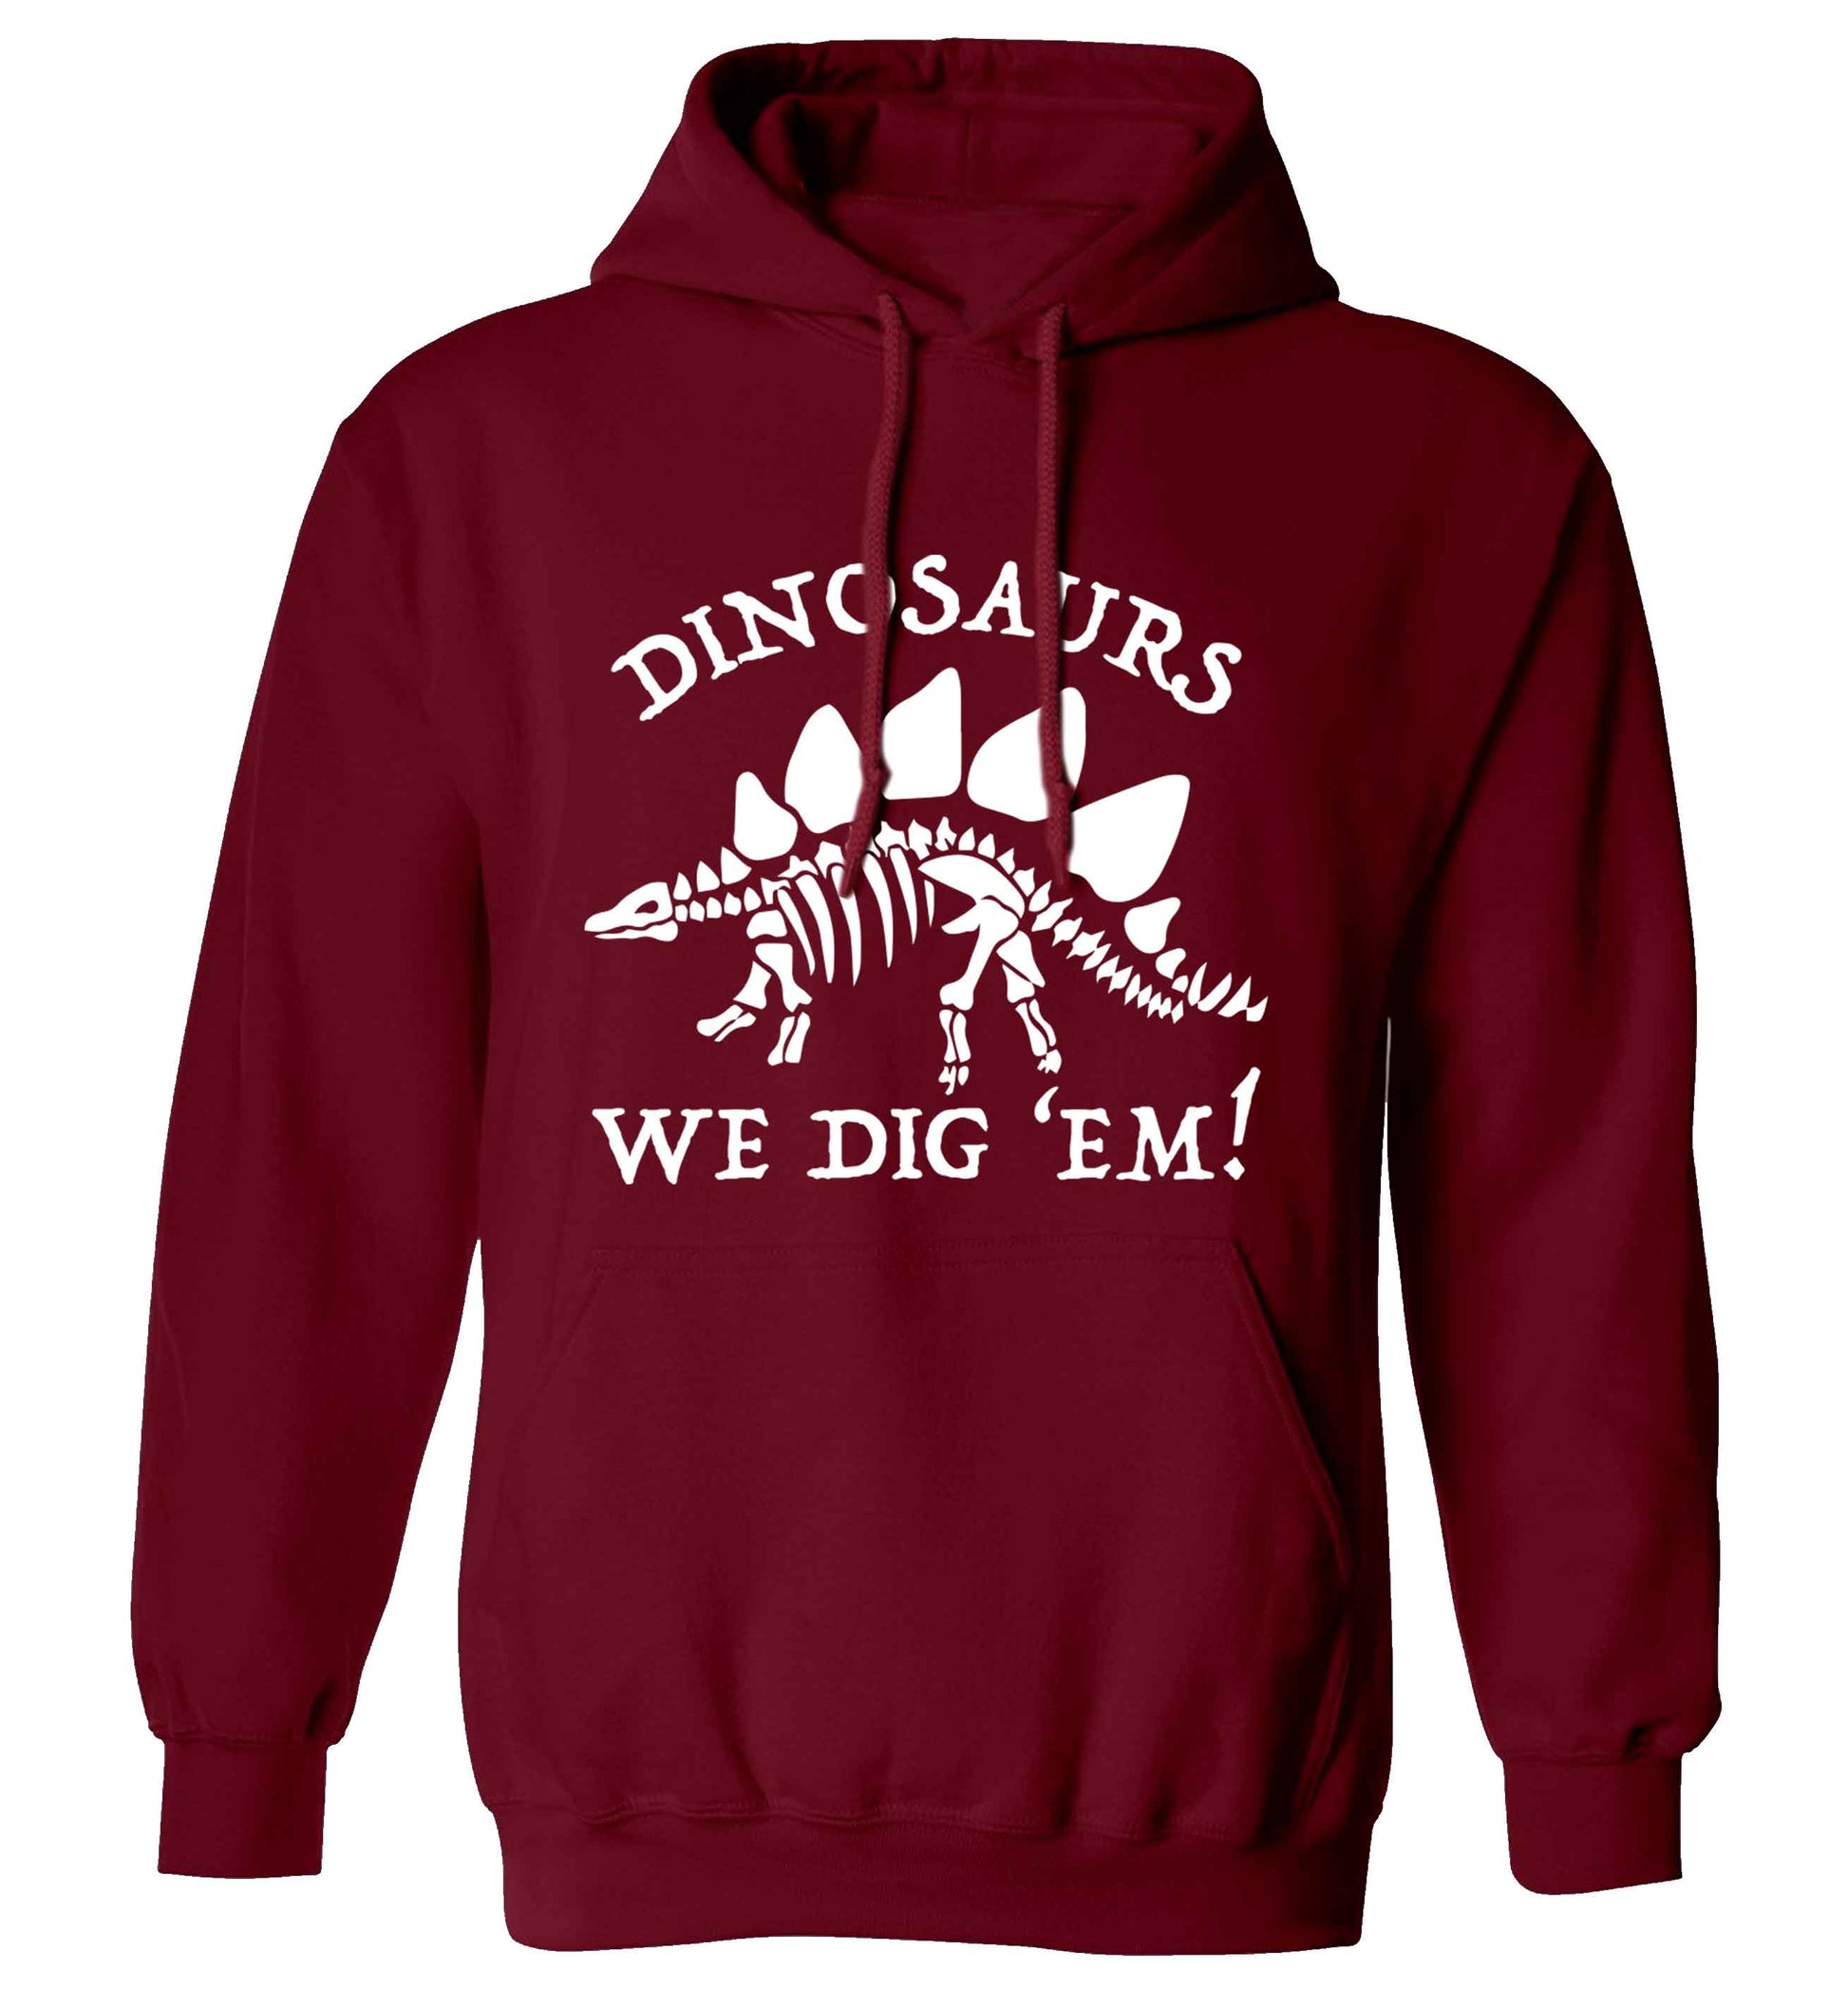 Dinosaurs we dig 'em! adults unisex maroon hoodie 2XL